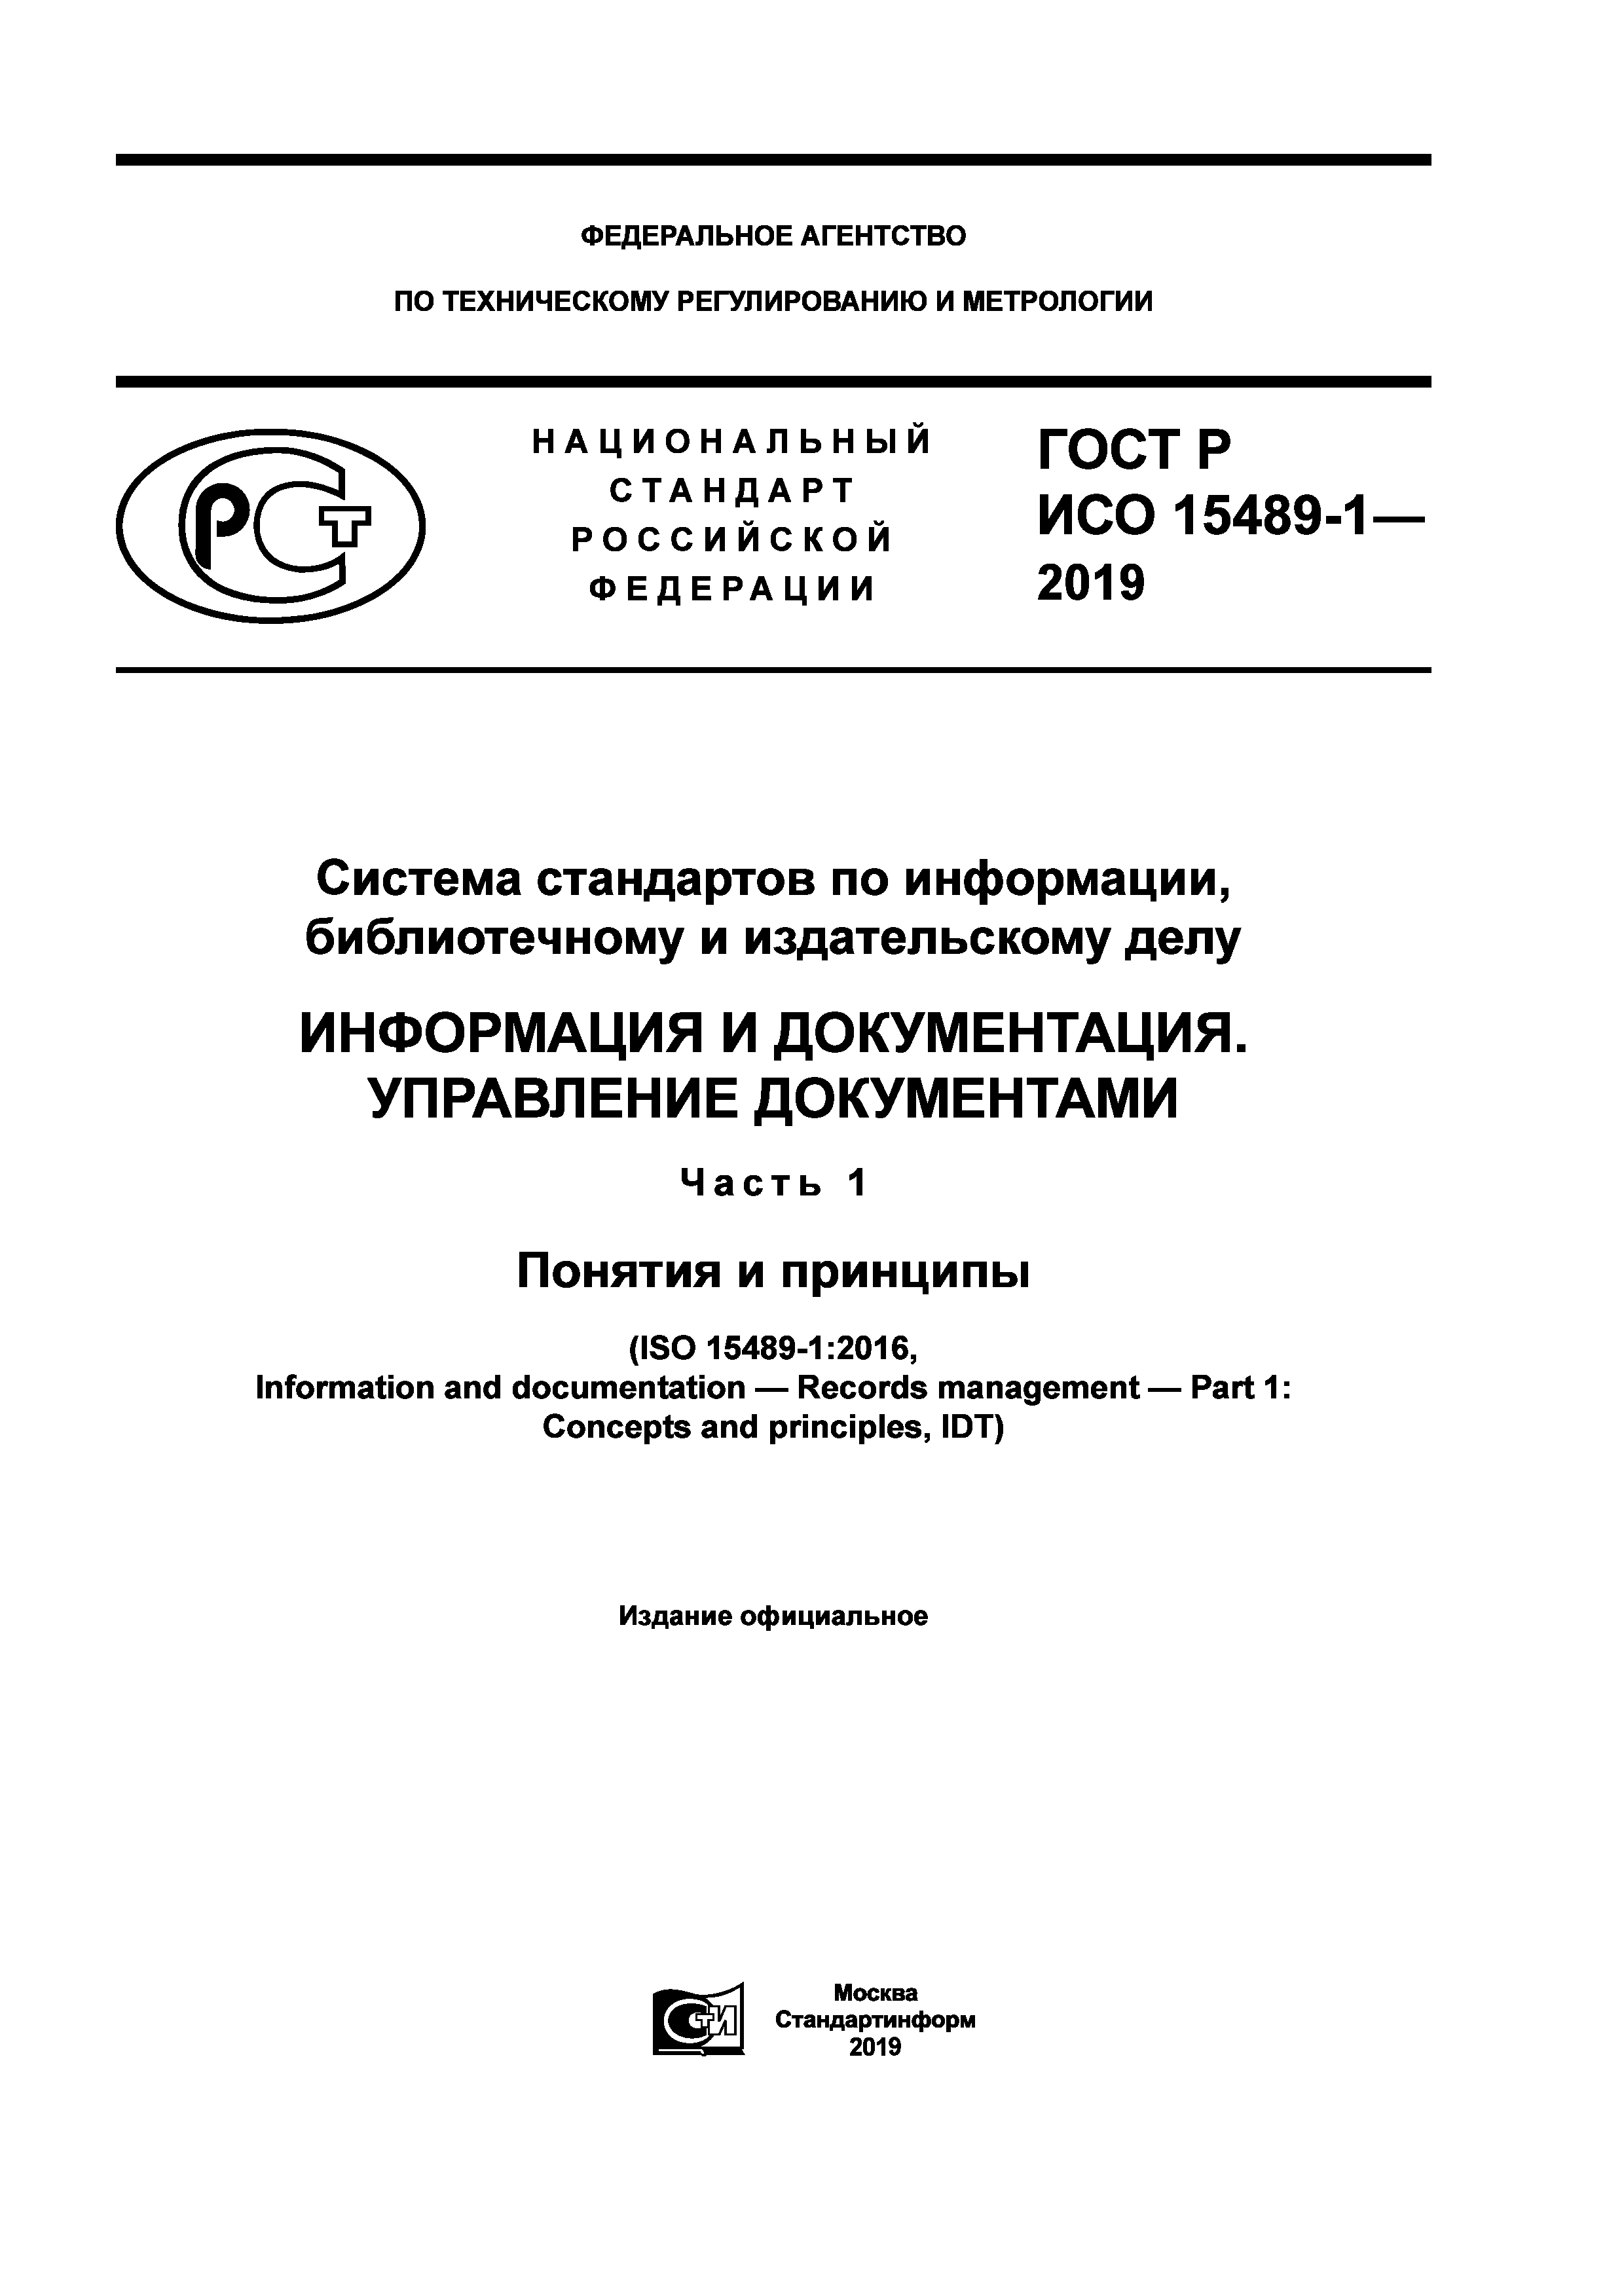 ГОСТ Р ИСО 15489-1-2019